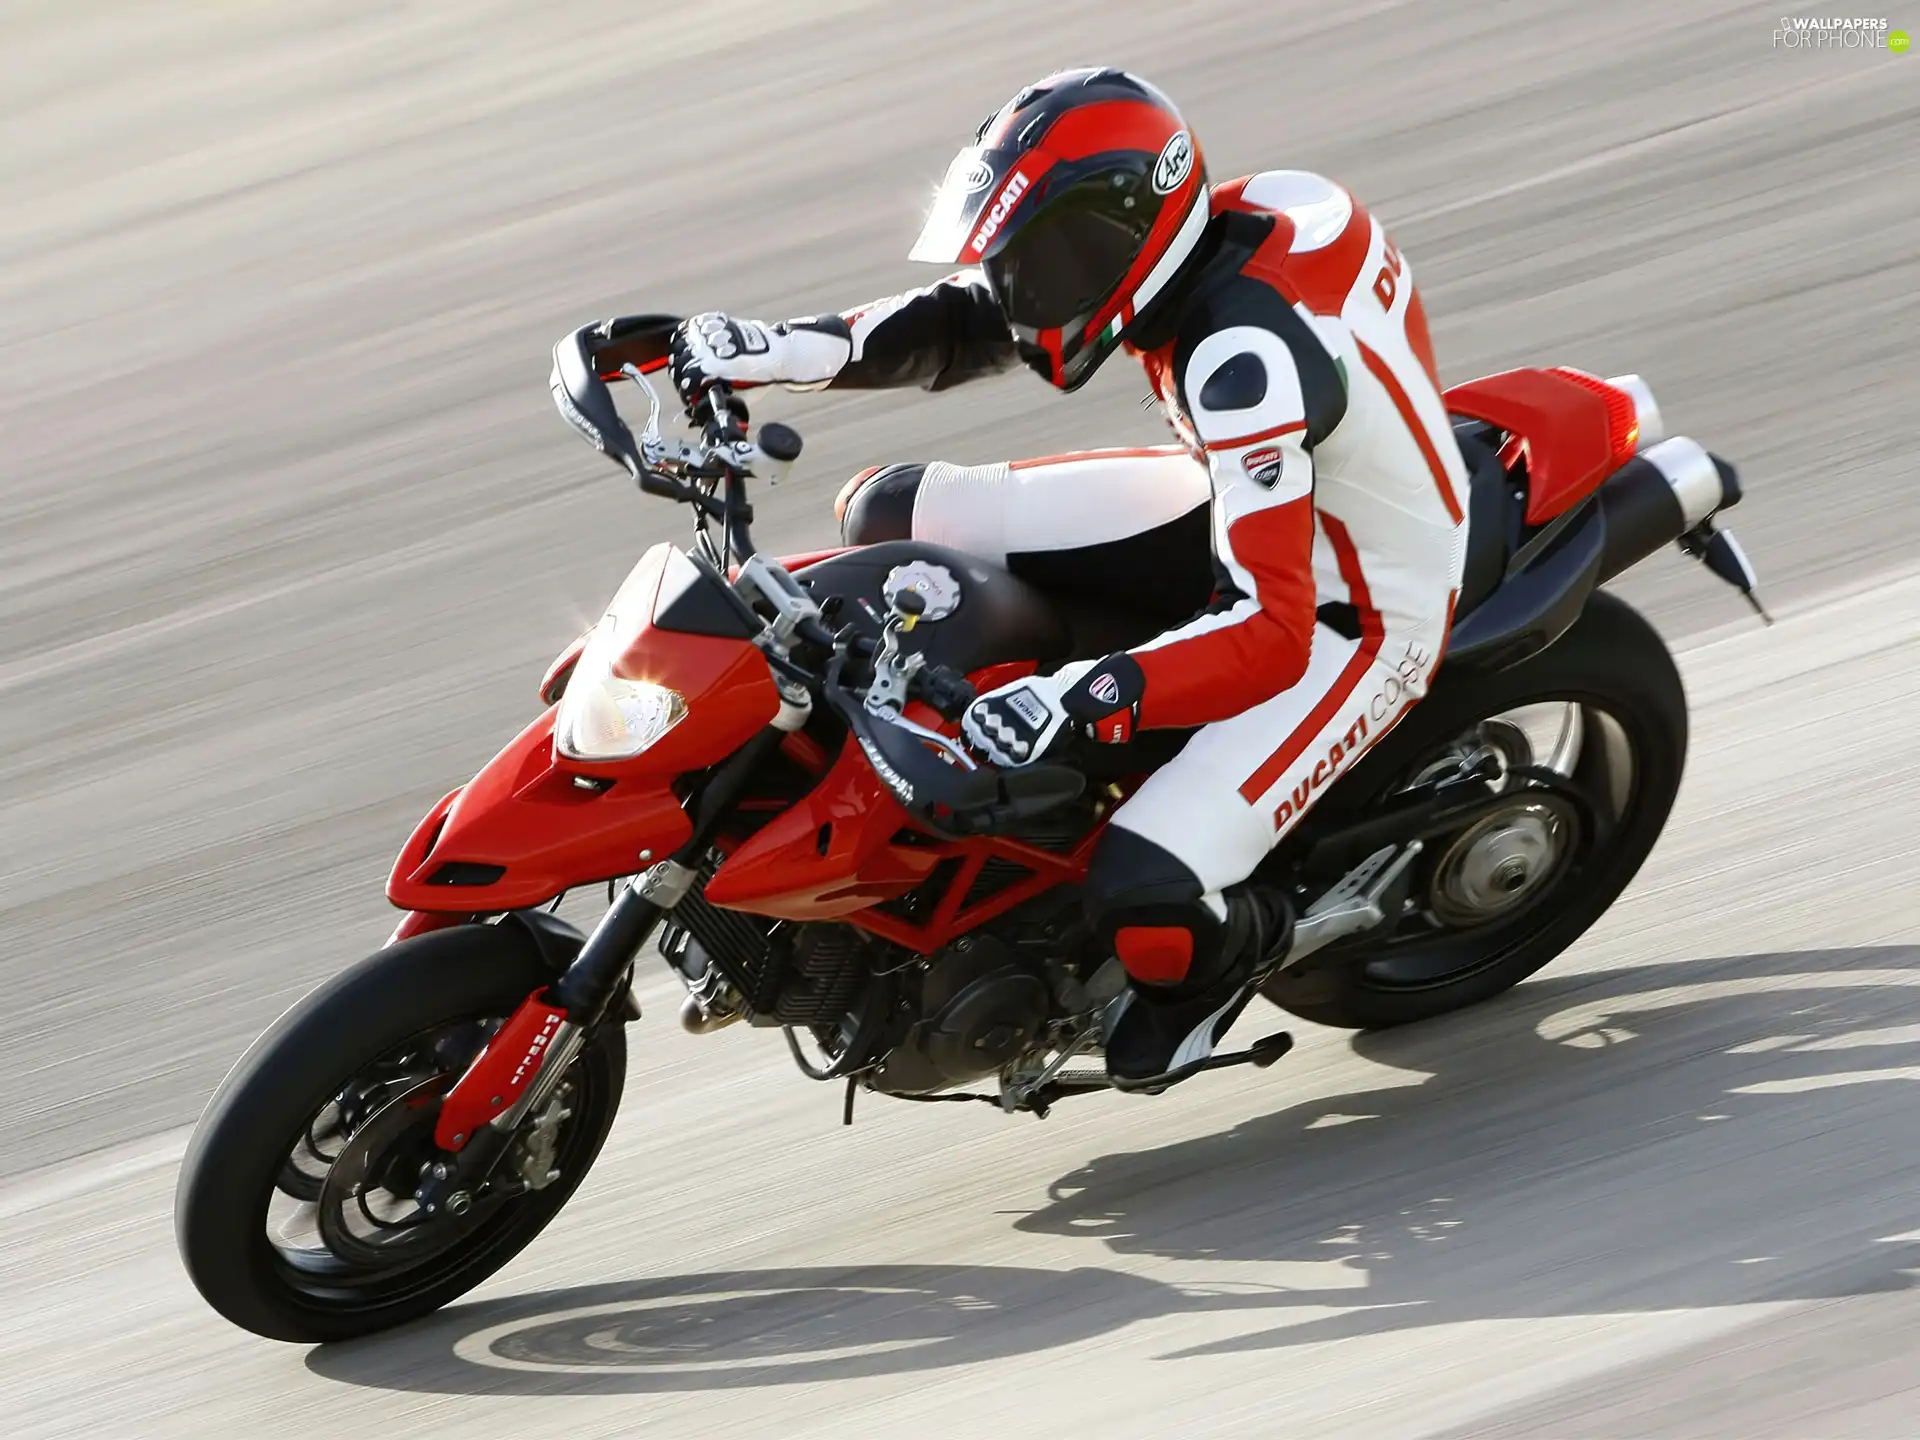 helmet, Ducati Hypermotard 1100, Motorcyclist